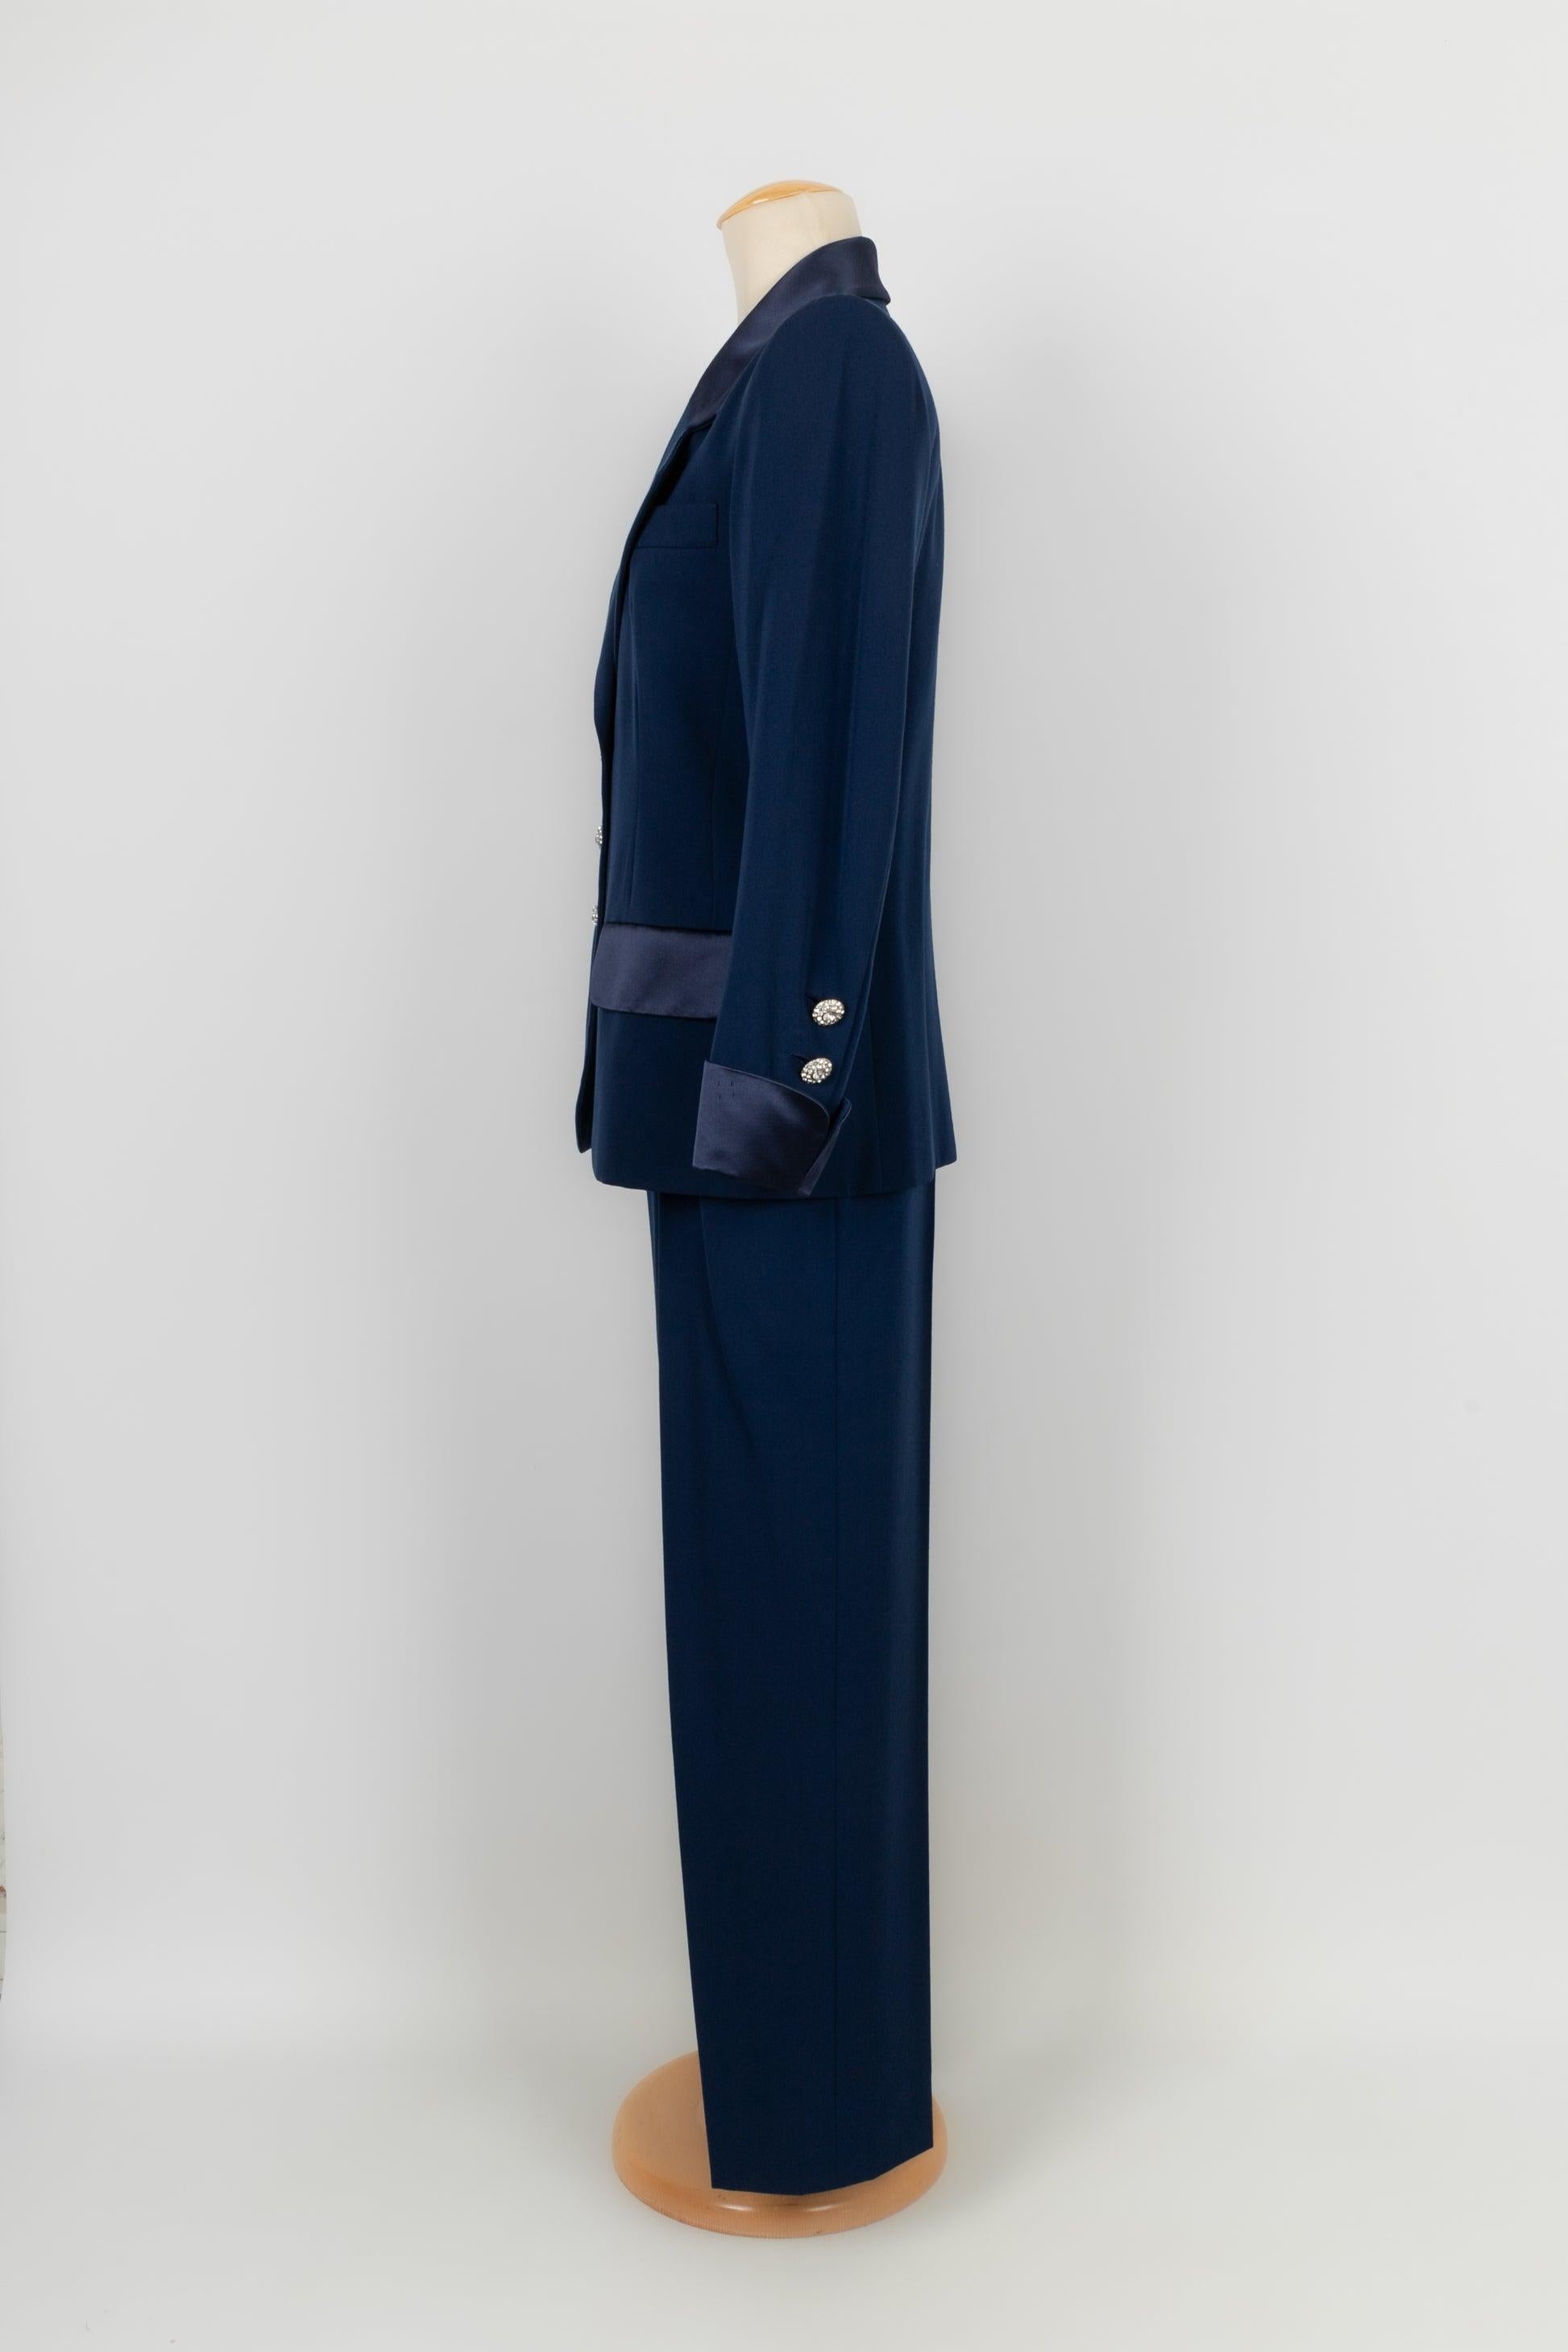 Yves Saint Laurent - (Fabriqué en France) Ensemble pantalon Haute Couture en laine bleue avec revers de manches en satin de soie bleu. Pas de Label de taille ni de composition, il convient à un 36FR/38FR. A noter, des accroches autour de la